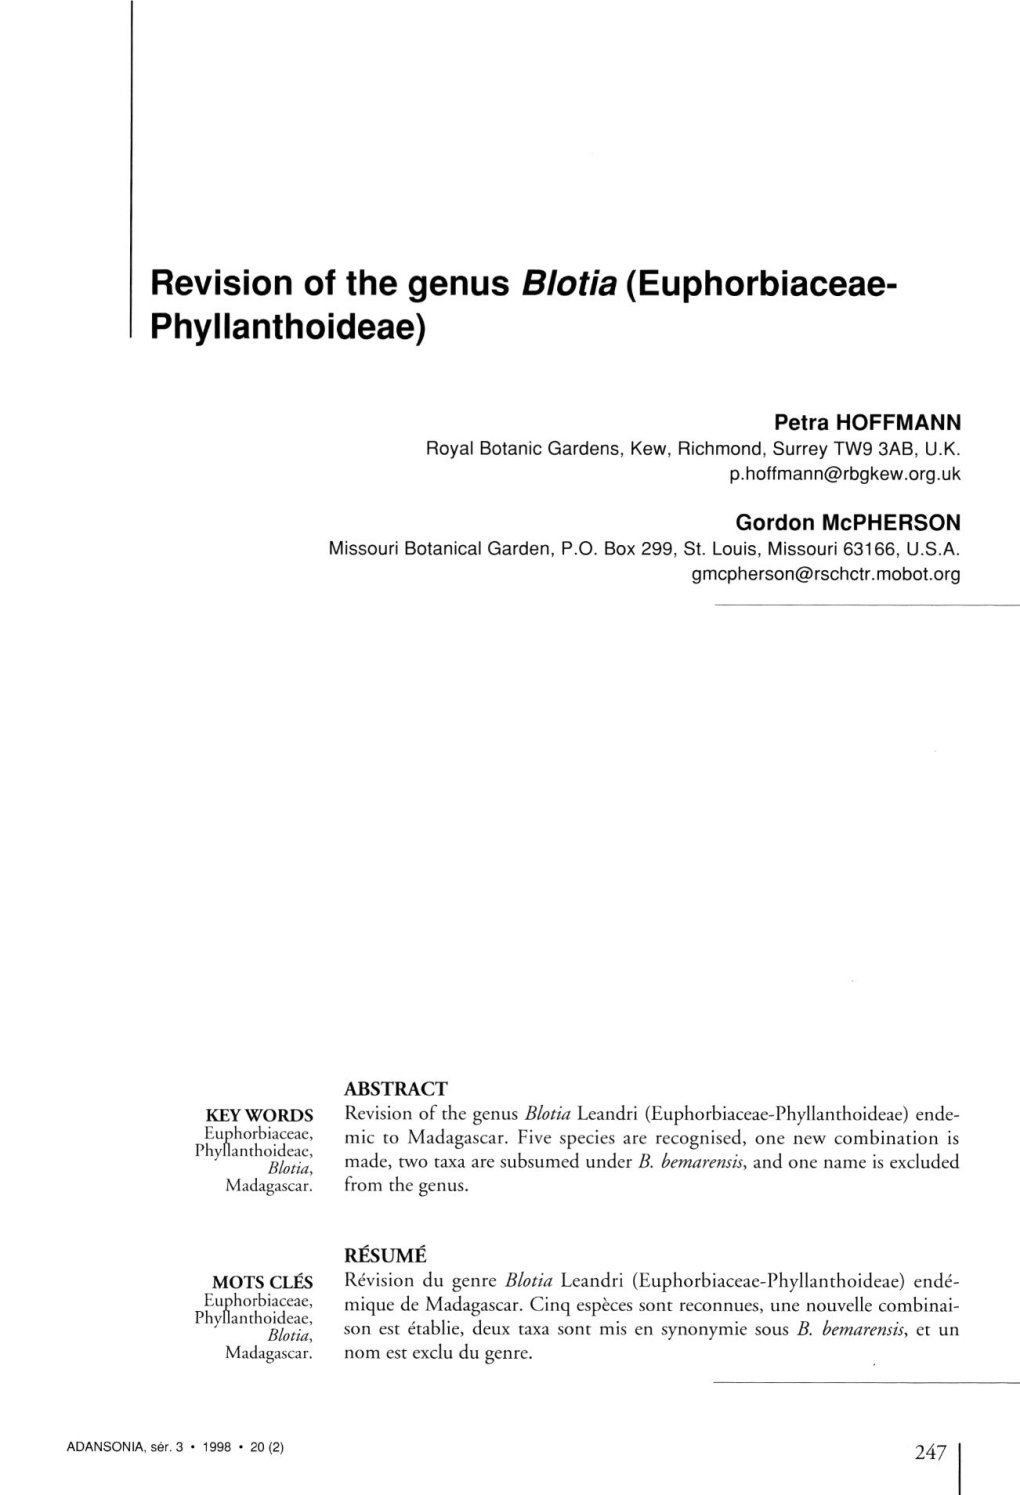 Revision of the Genus Blotia (Euphorbiaceae- Phyllanthoideae)